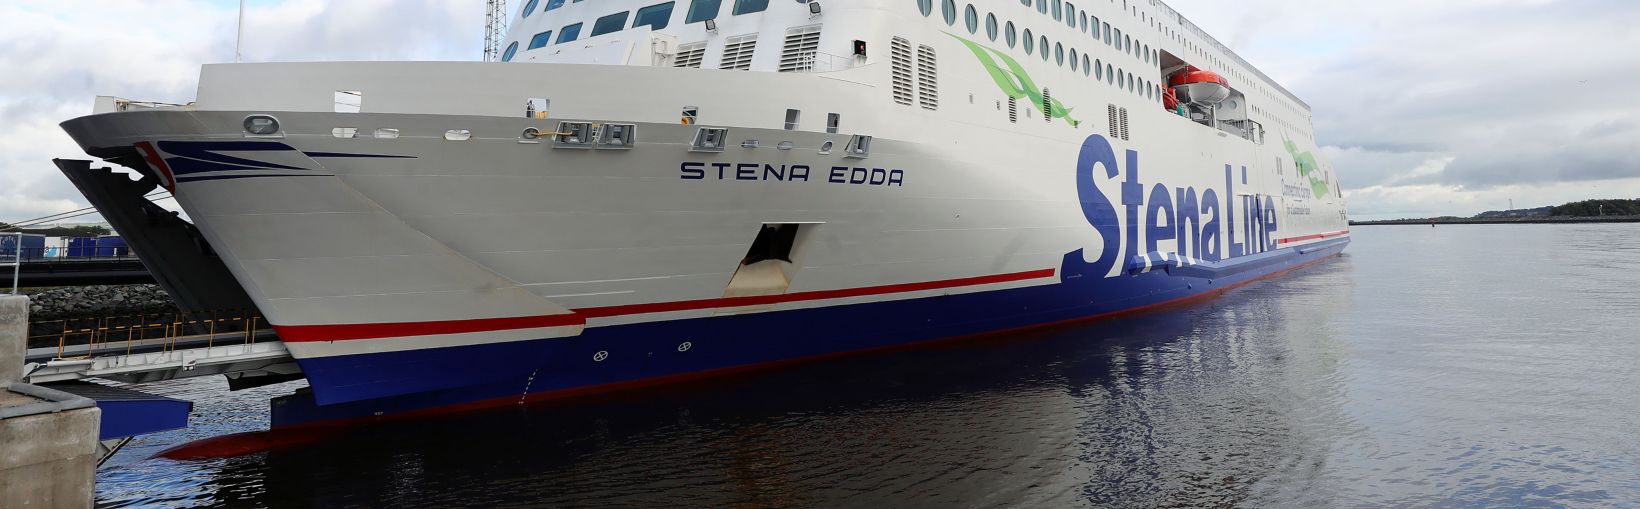 Stena Edda Fähre im Hafen von Belfast angedockt